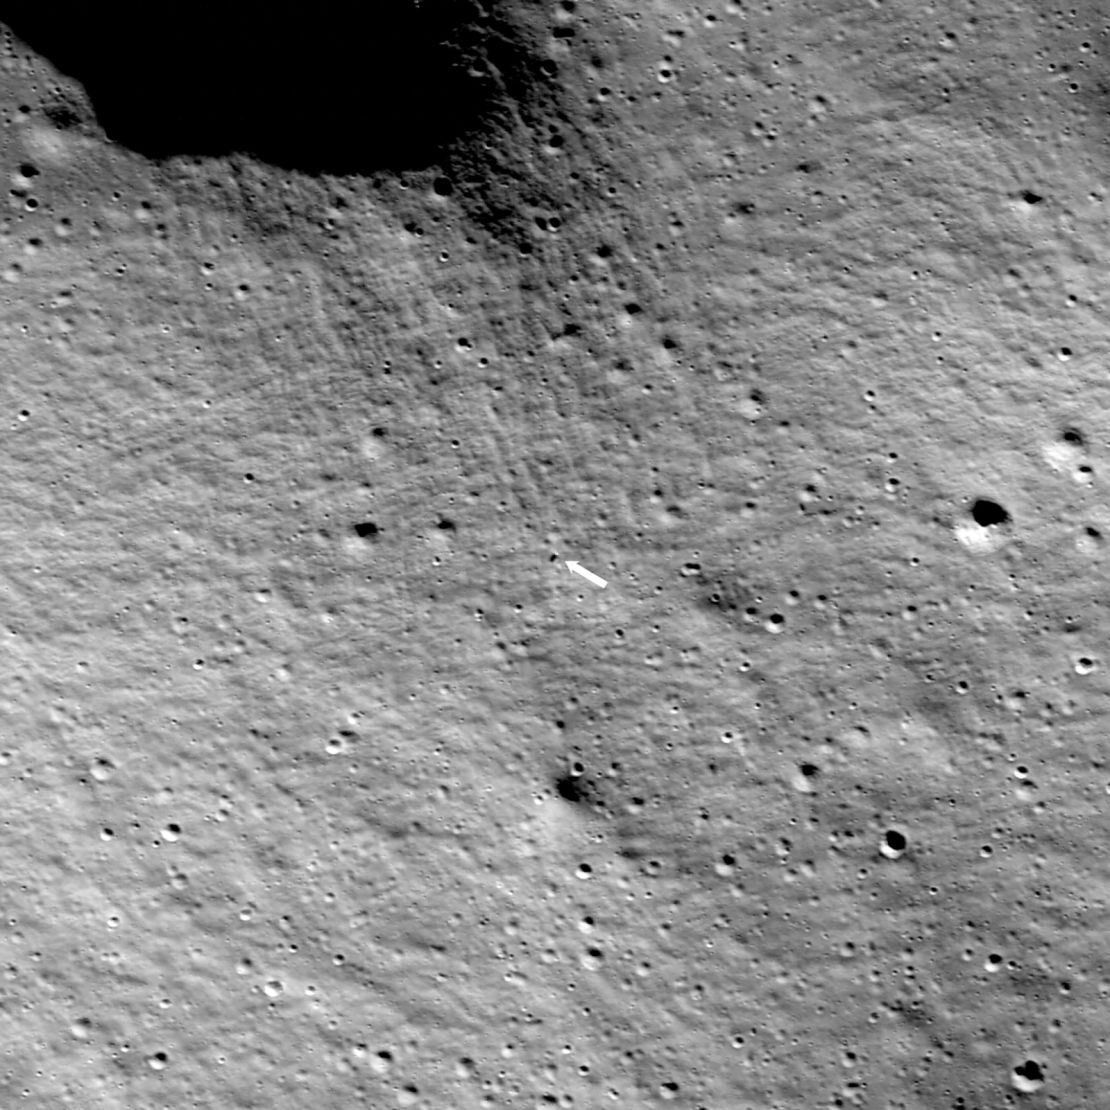 O Lunar Reconnaissance Orbiter da NASA capturou esta imagem do módulo de pouso Intuitive Machines Nova-C, também chamado de Odysseus, Odie ou IM-1, na superfície da lua em 24 de fevereiro às 13h57 horário do leste dos EUA.